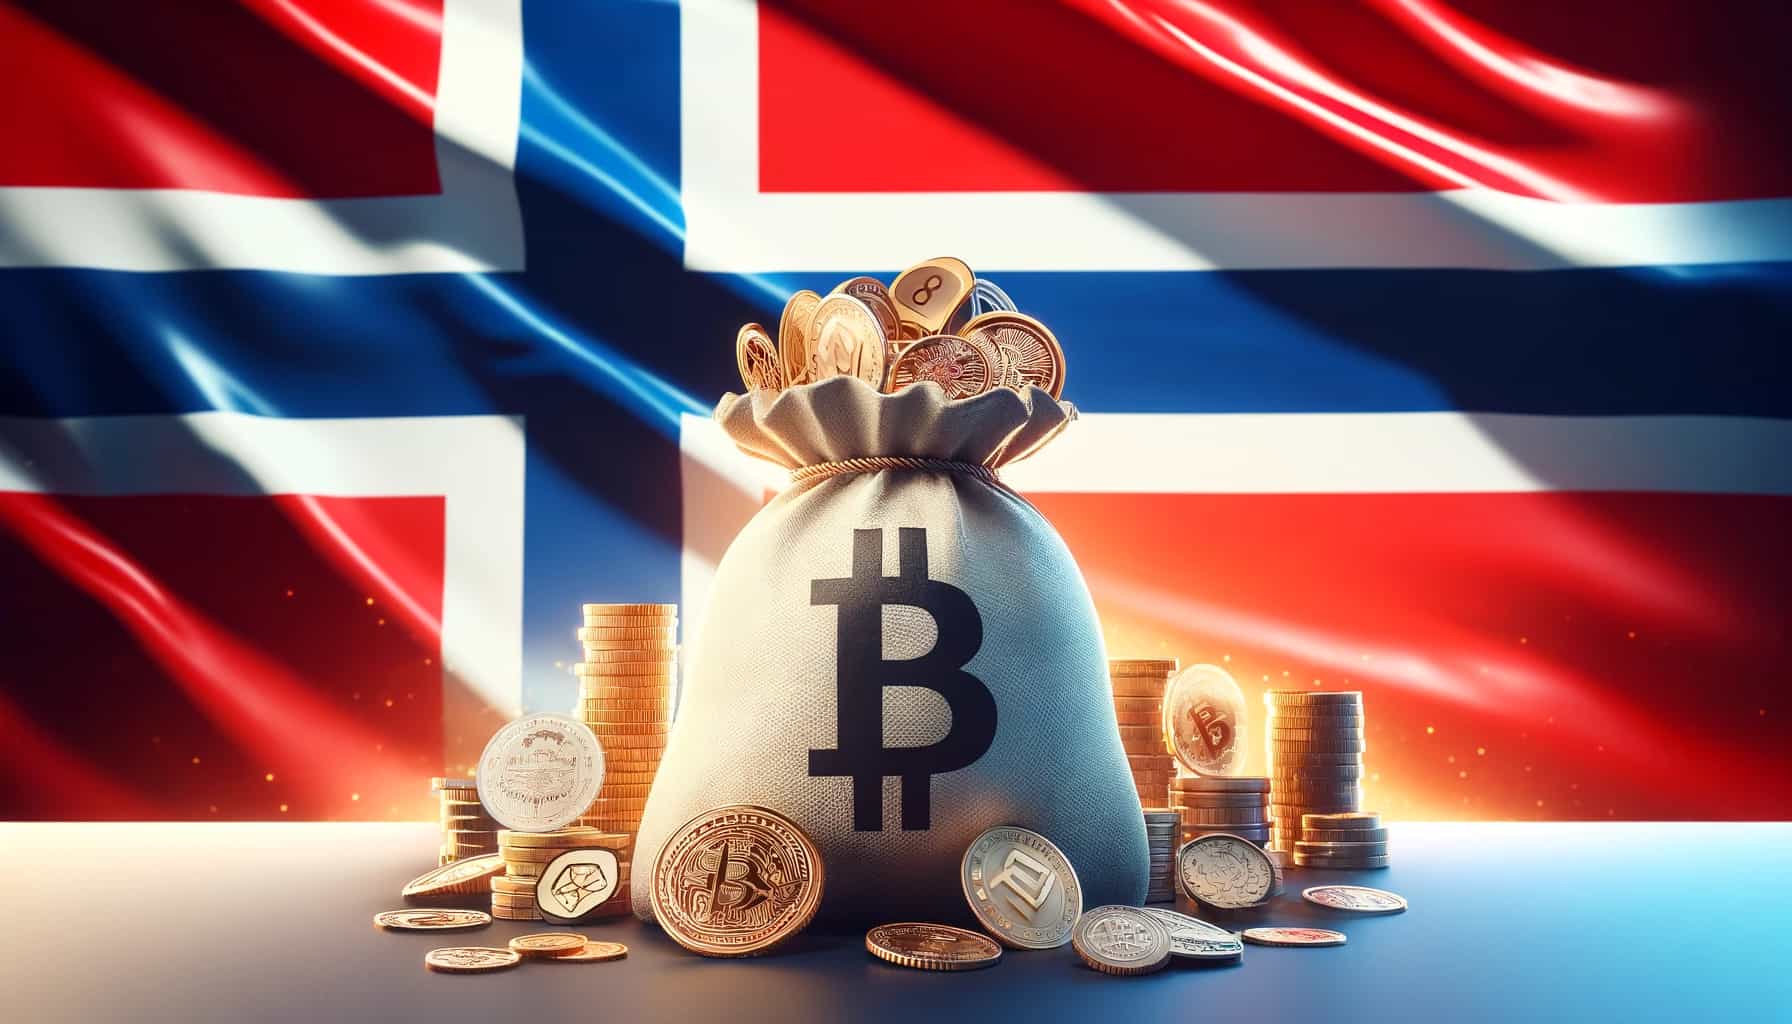 bitcoin in front of norwegian flag